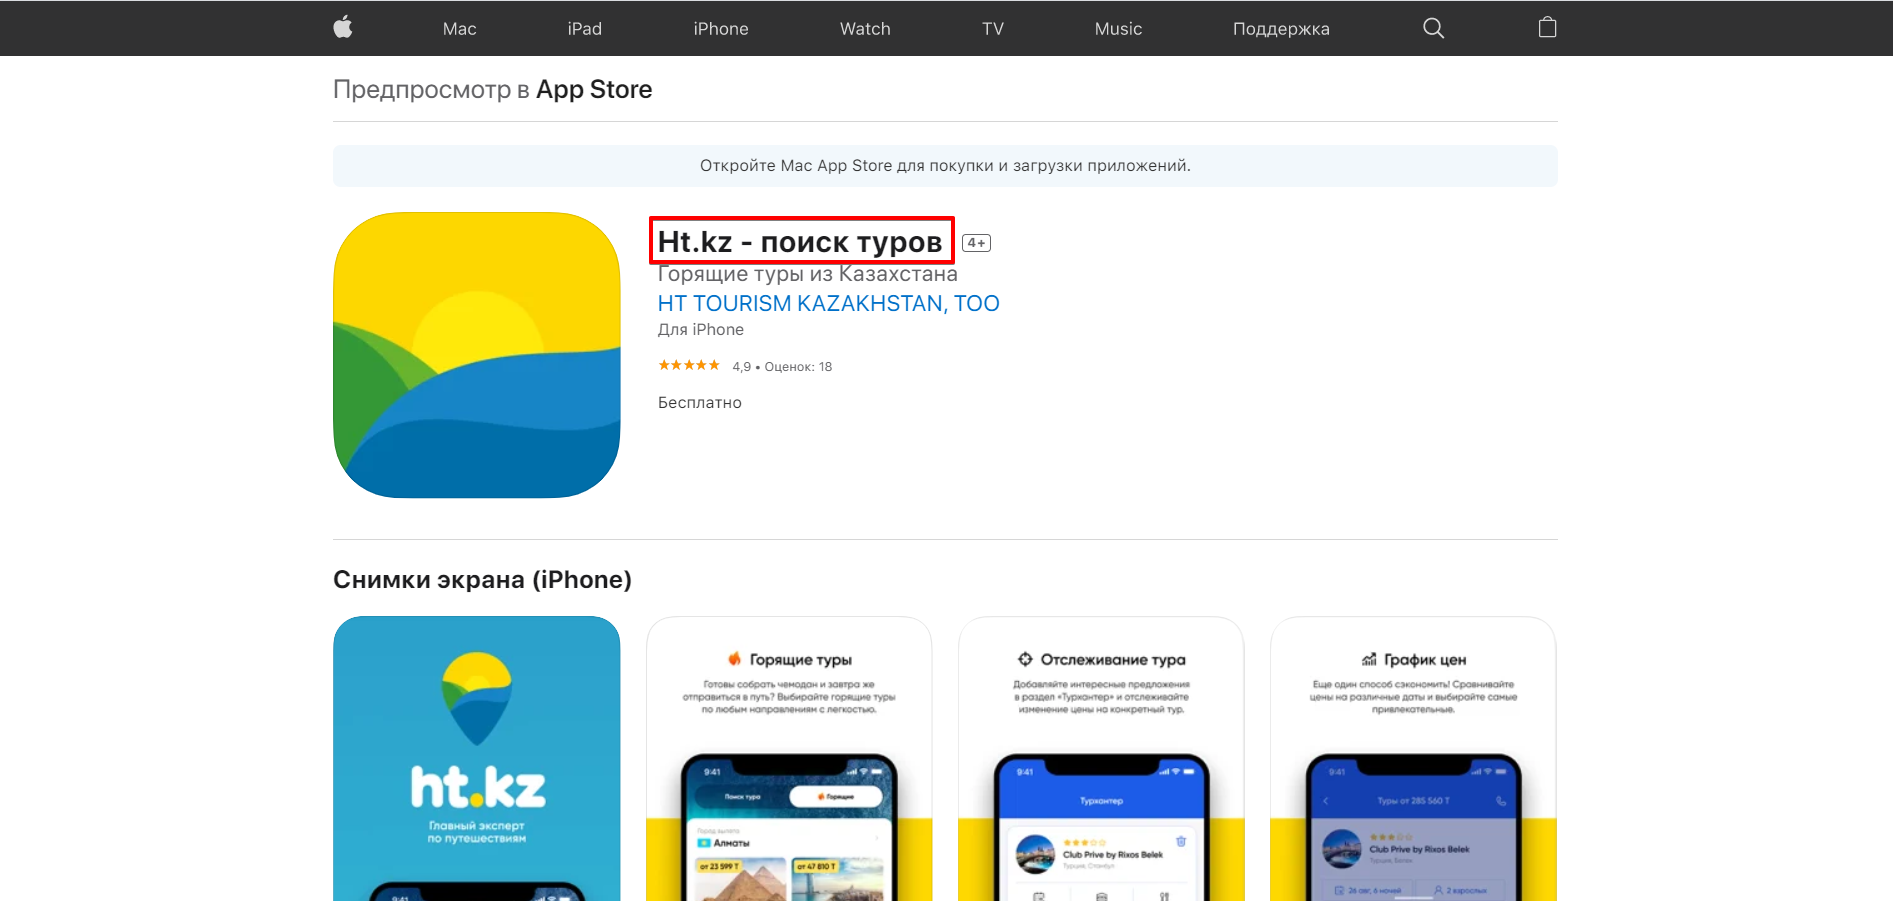 Название приложения в App Store.